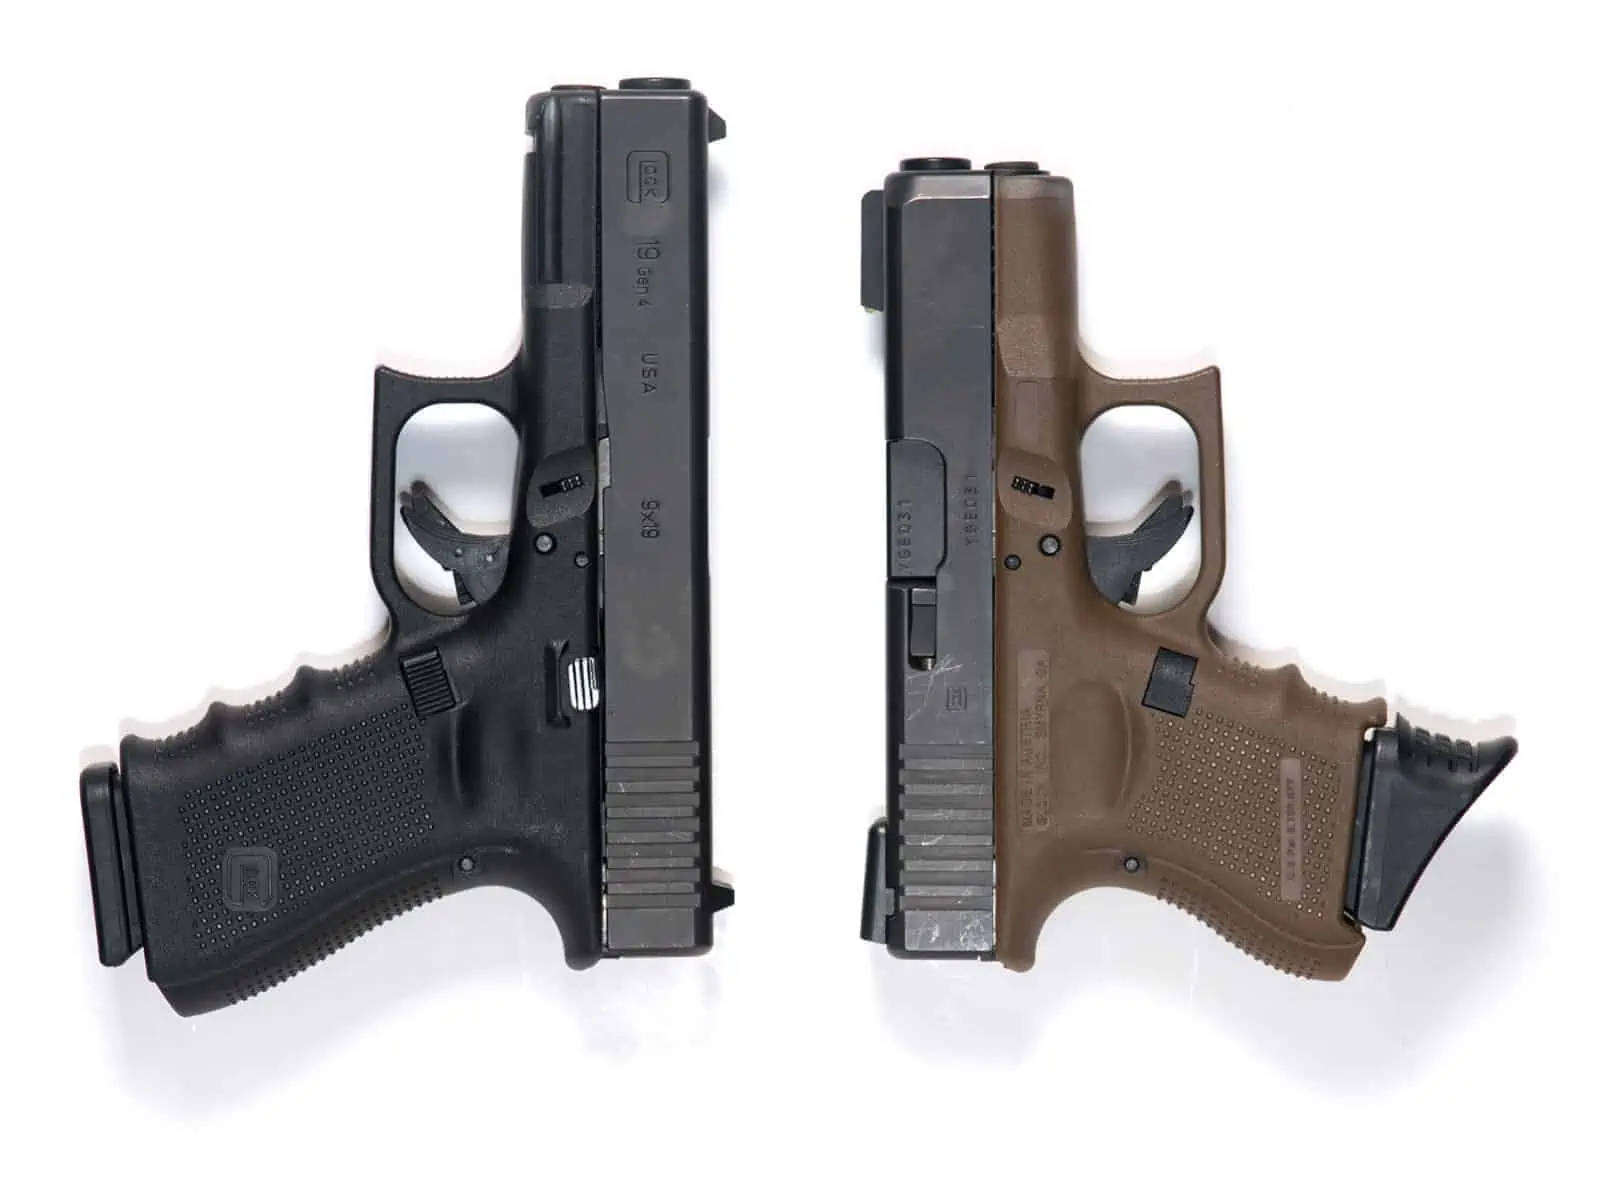 Glock G17, G19, & G26 9mm Pistol Comparison